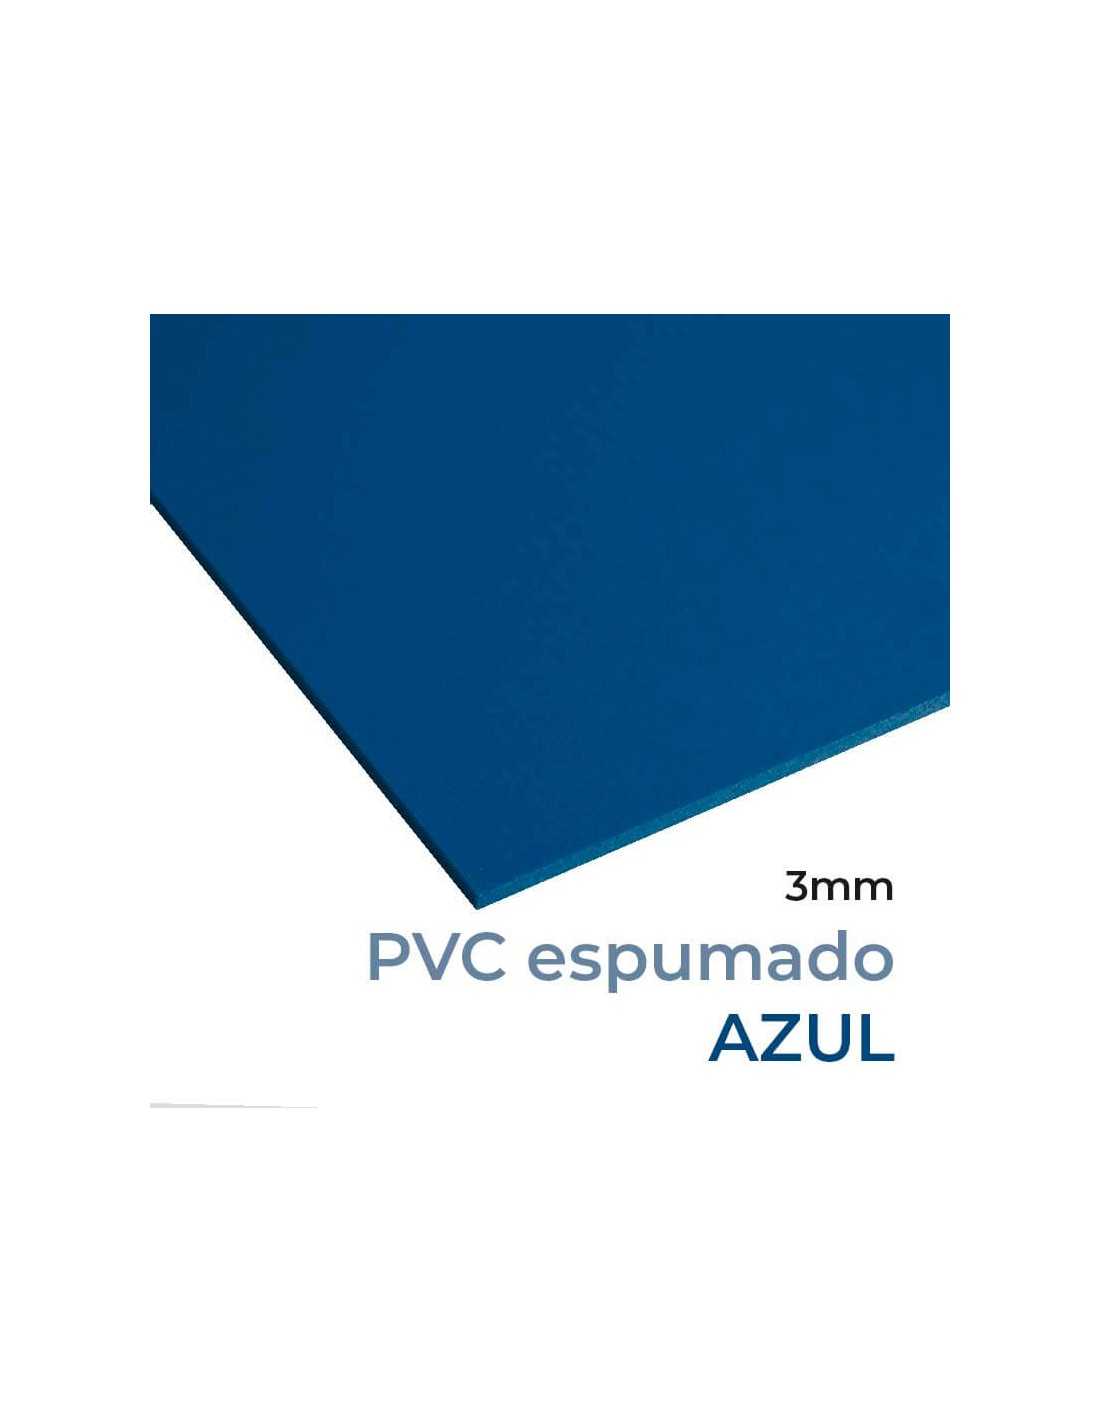 Lona compuesta por 3 capas de material plástico de primera calidad  PVC-Poliéster que proporcionan una excelente resistencia y un